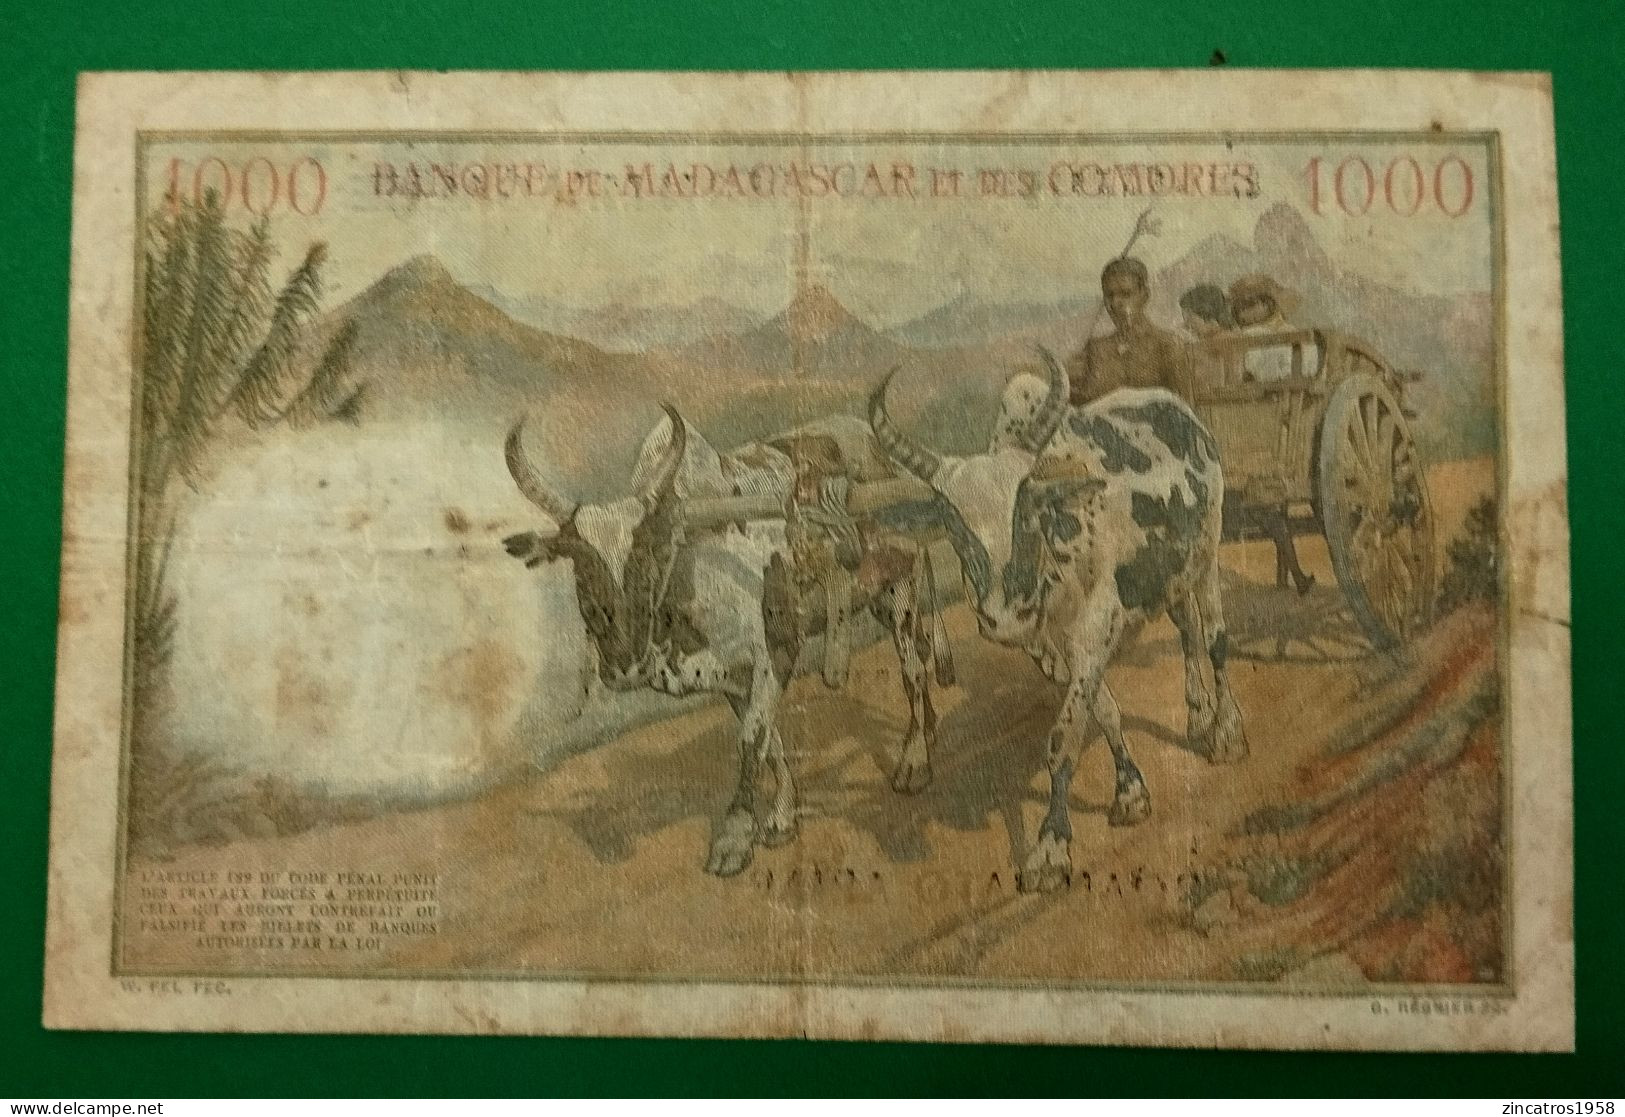 Banque Madagascar Et Comores / 1000 Francs Surchargé Madagascar 9/10/1952 P.54 / Trés Rare ++++ - Madagaskar